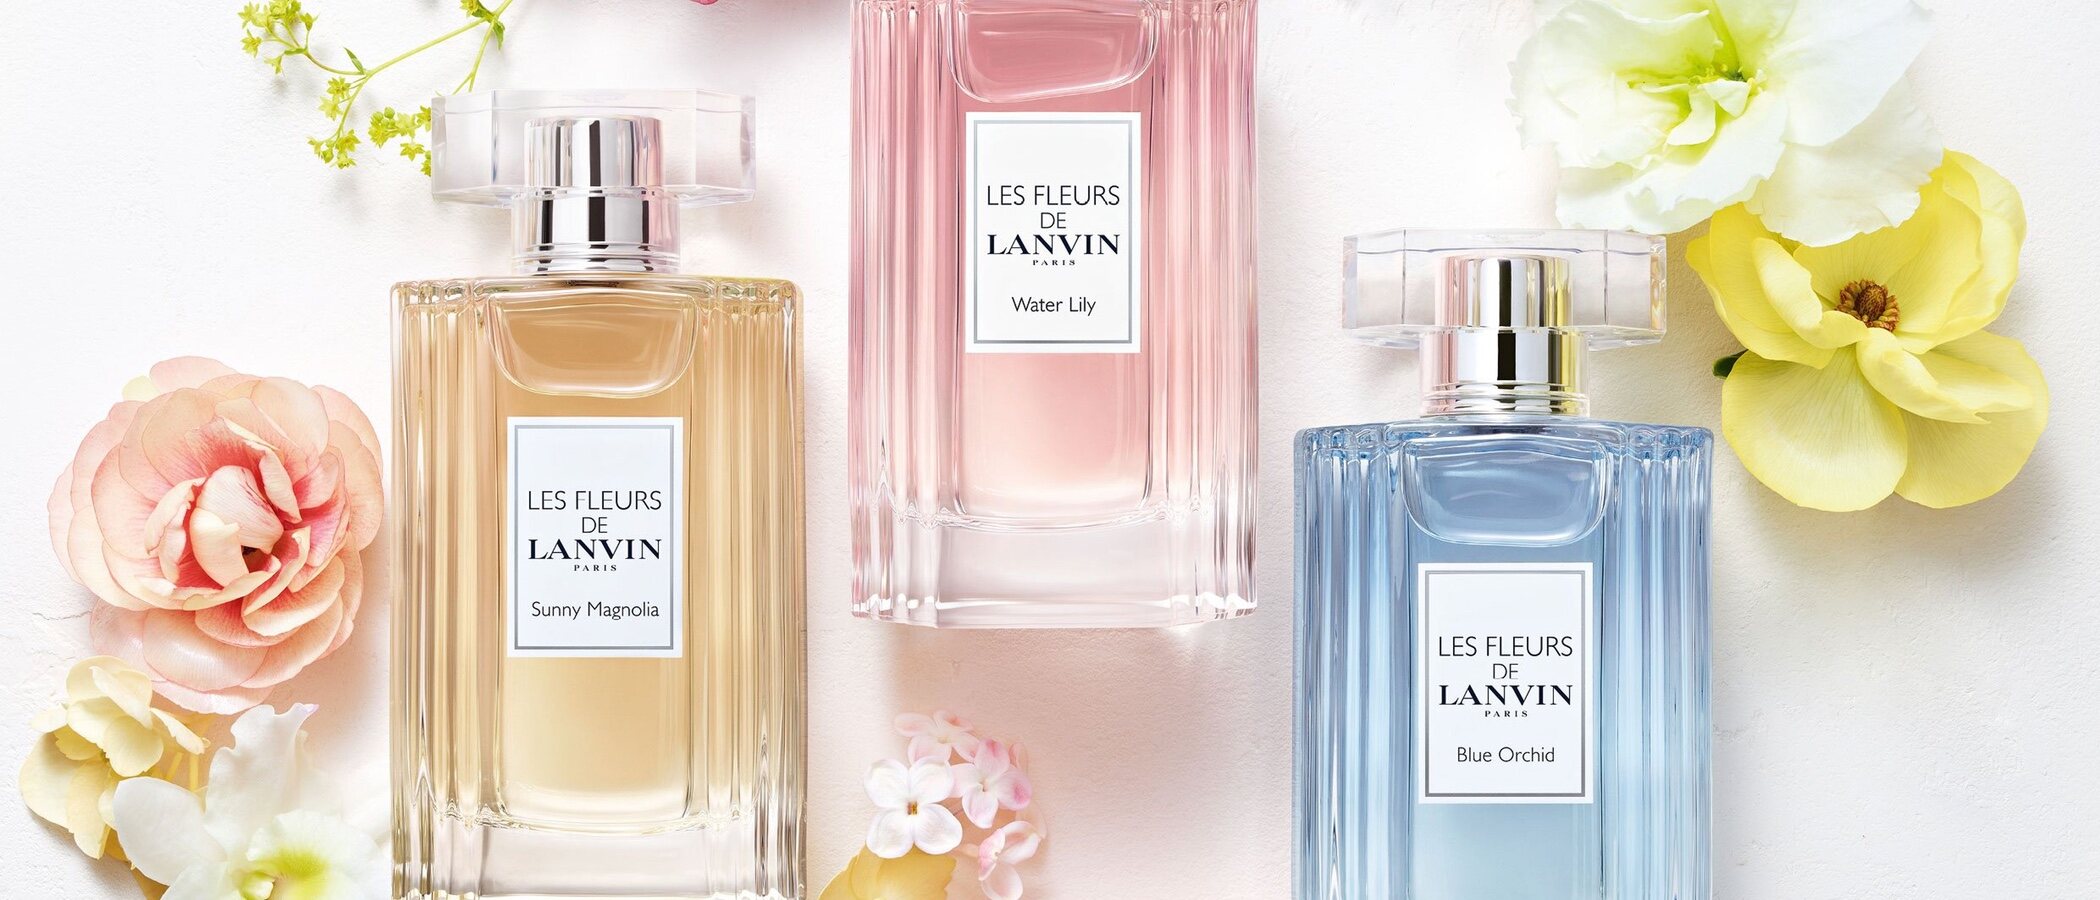 'Water Lily', 'Blue Orchid' y 'Sunny Magnolia', los perfumes de 'Les Fleurs' de Lanvin